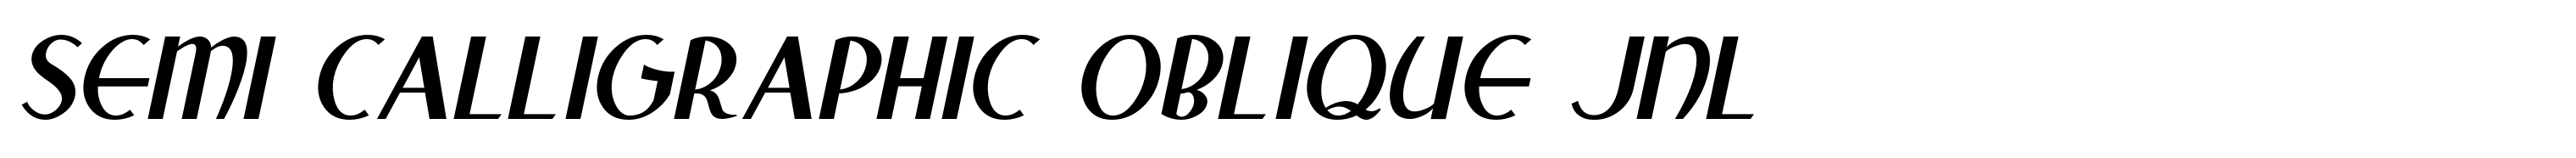 Semi Calligraphic Oblique JNL